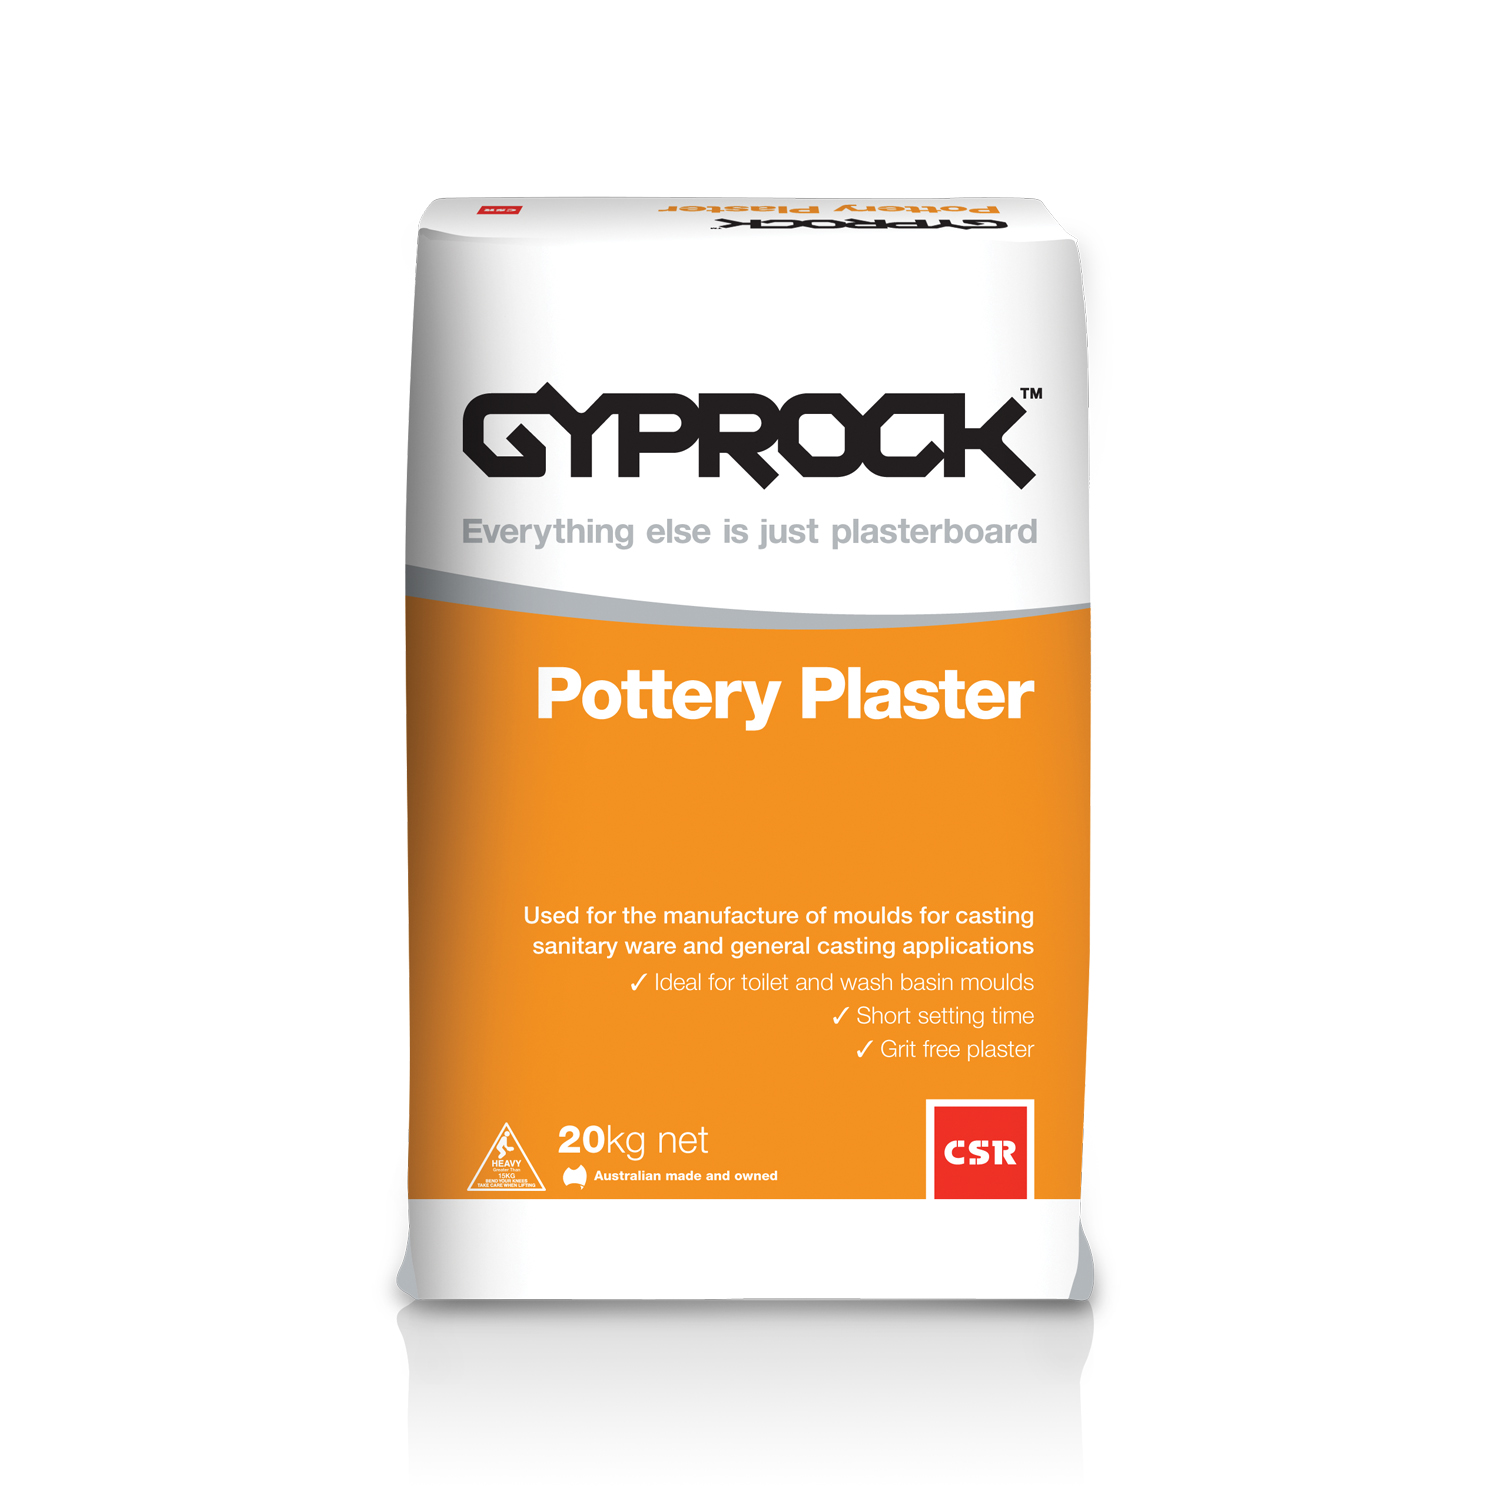 Gyprock® Pottery Plaster